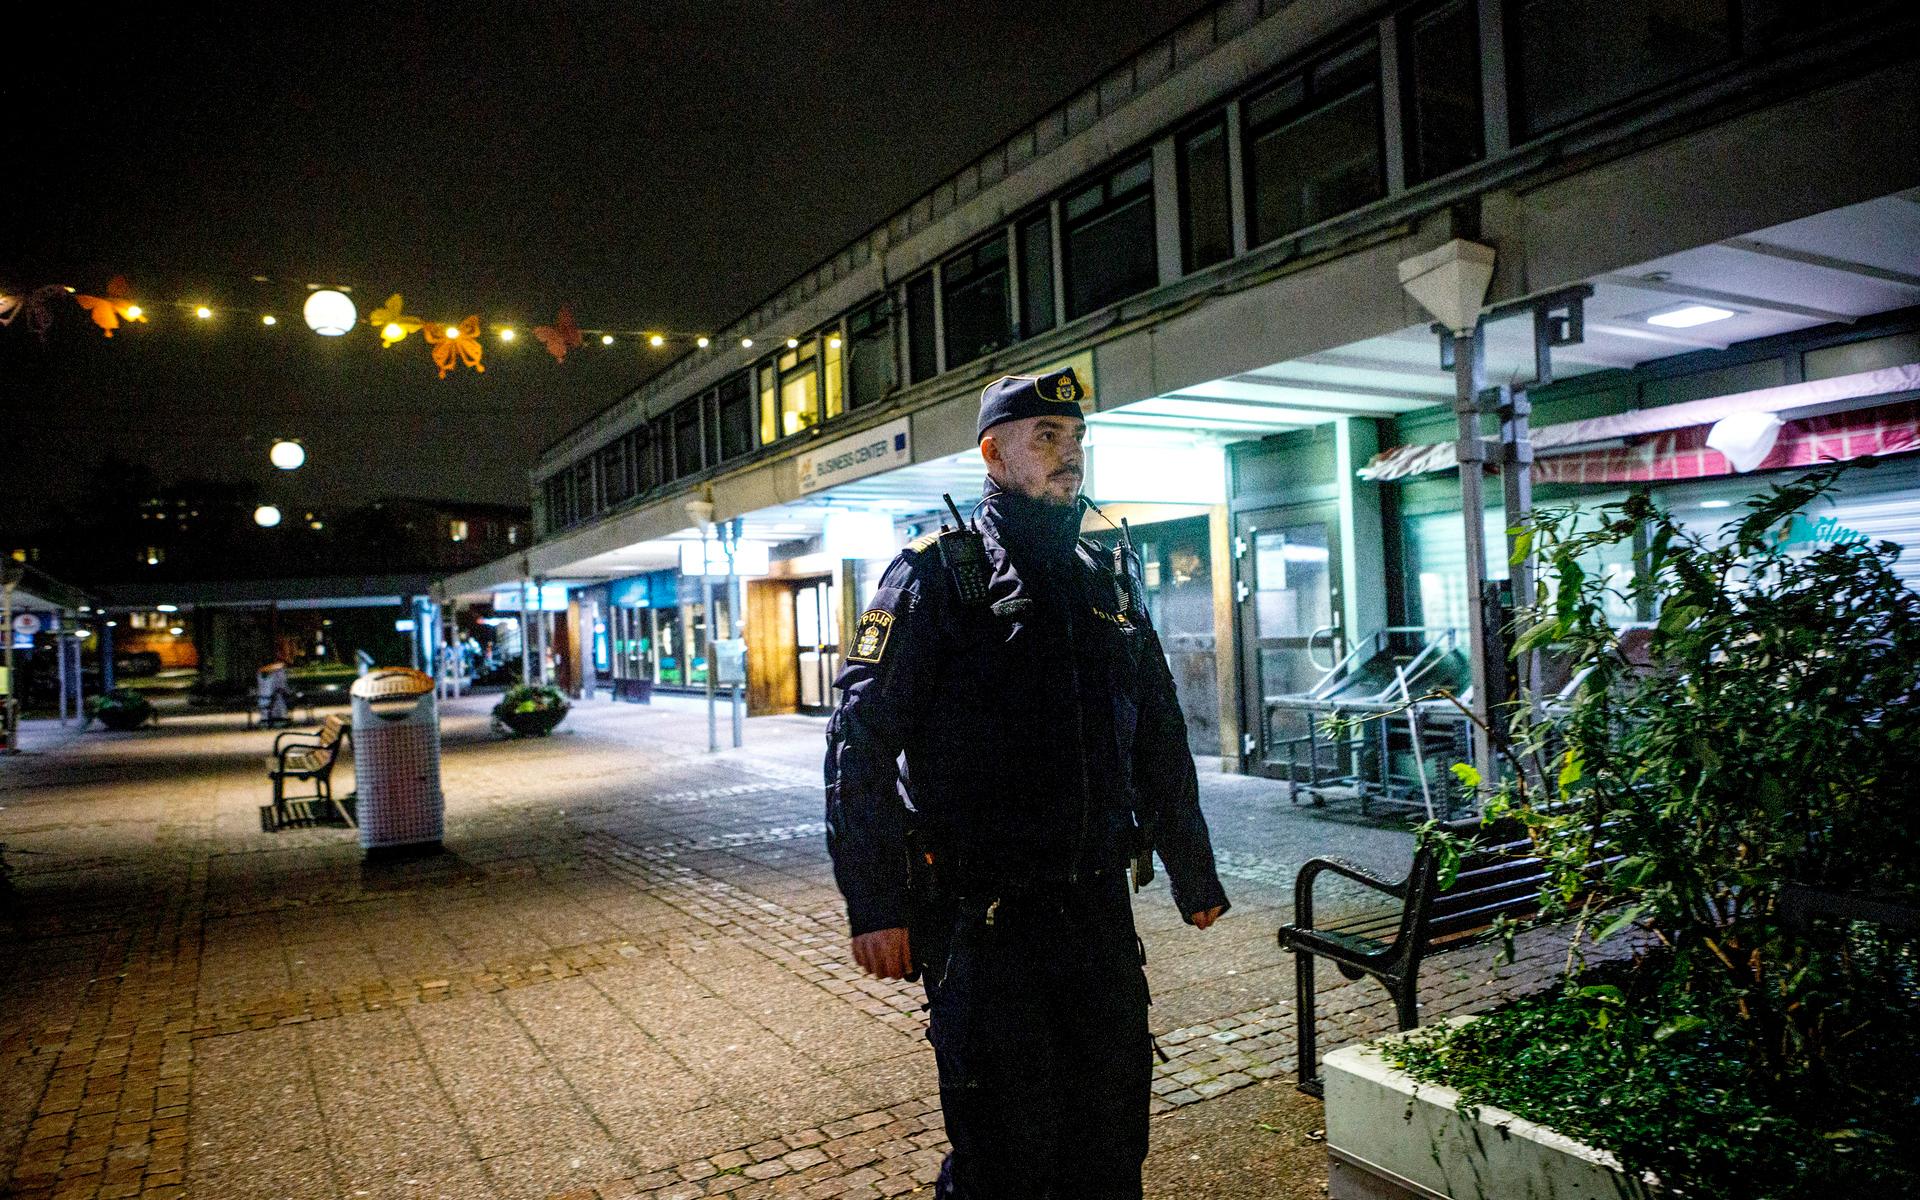 Mikael Folkesson arbetade som områdespolis i samma grupp som Andreas Danman på Hisingens polisstation.